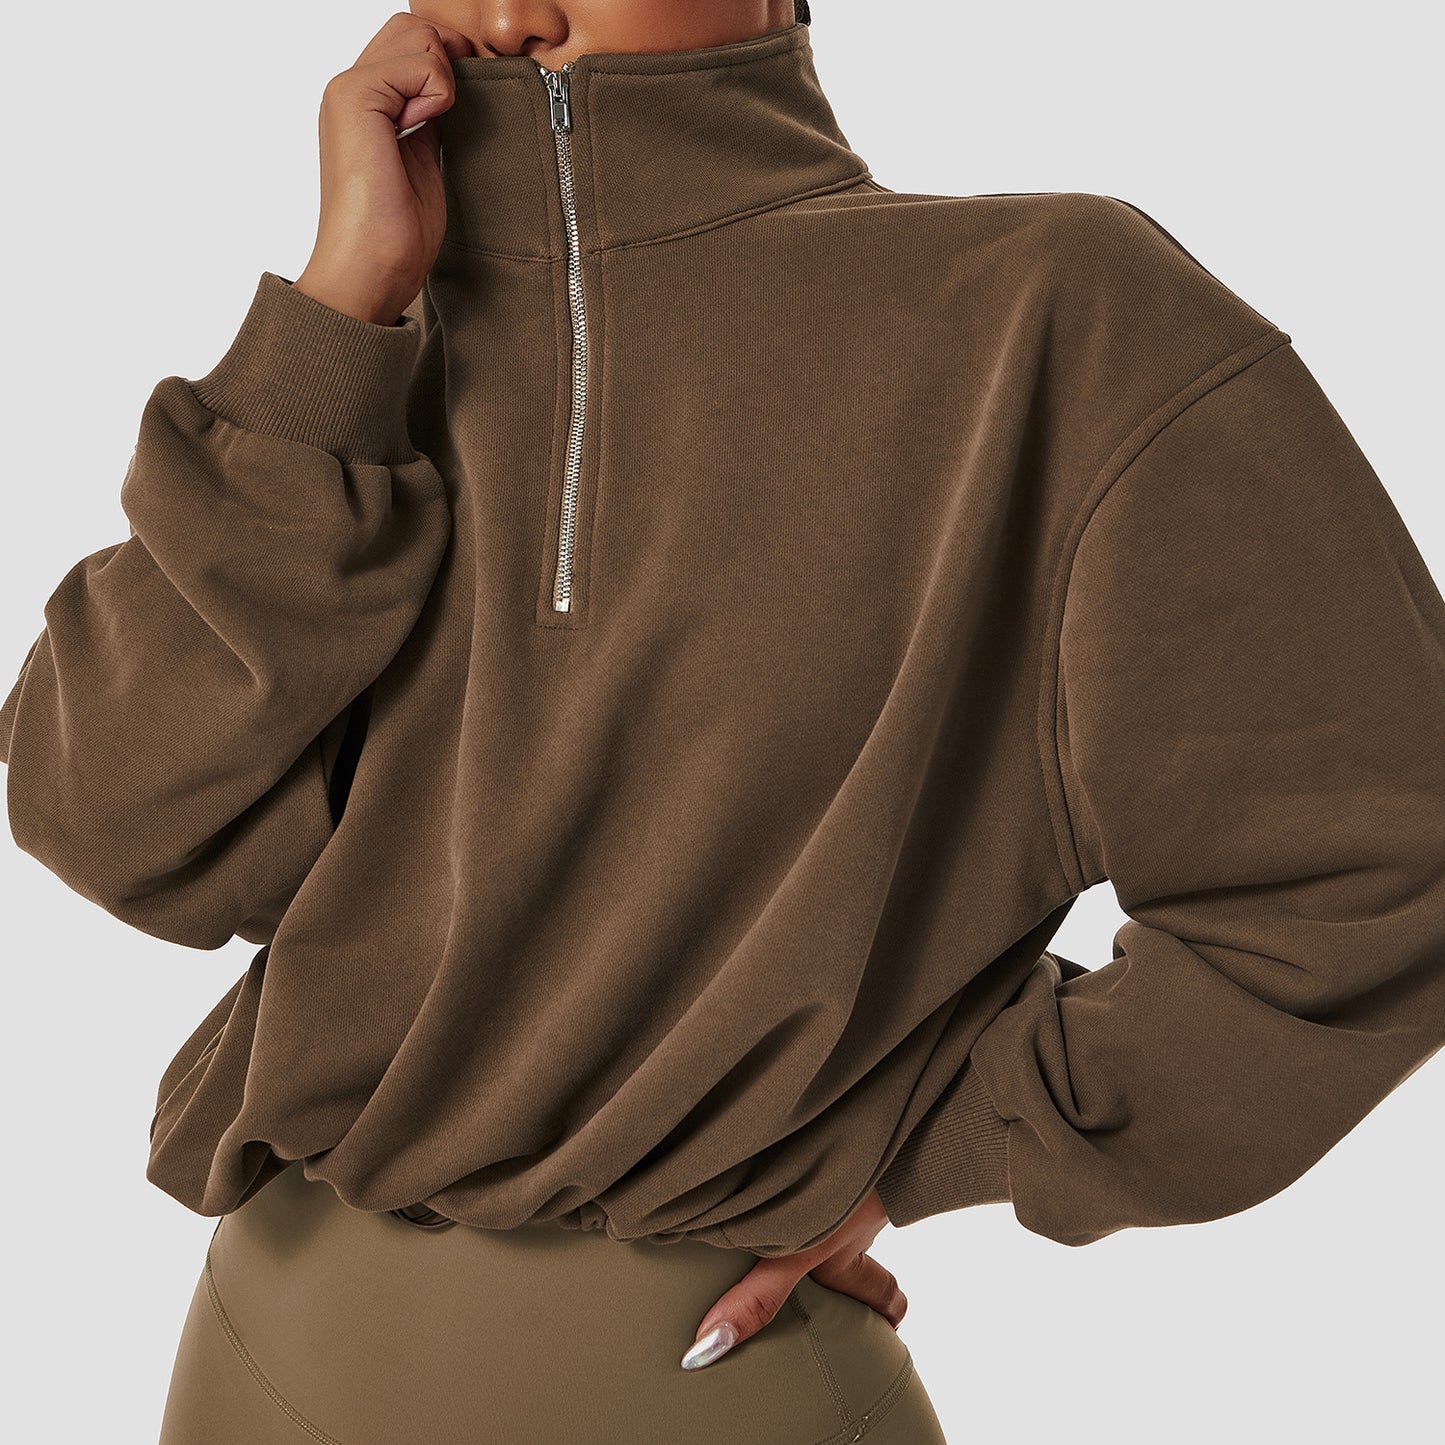 Pullover High Collar Fitness Sports Sweater Women Outdoor Running Drawstring Zipper Loose Long Sleeve Sweatershirt Women